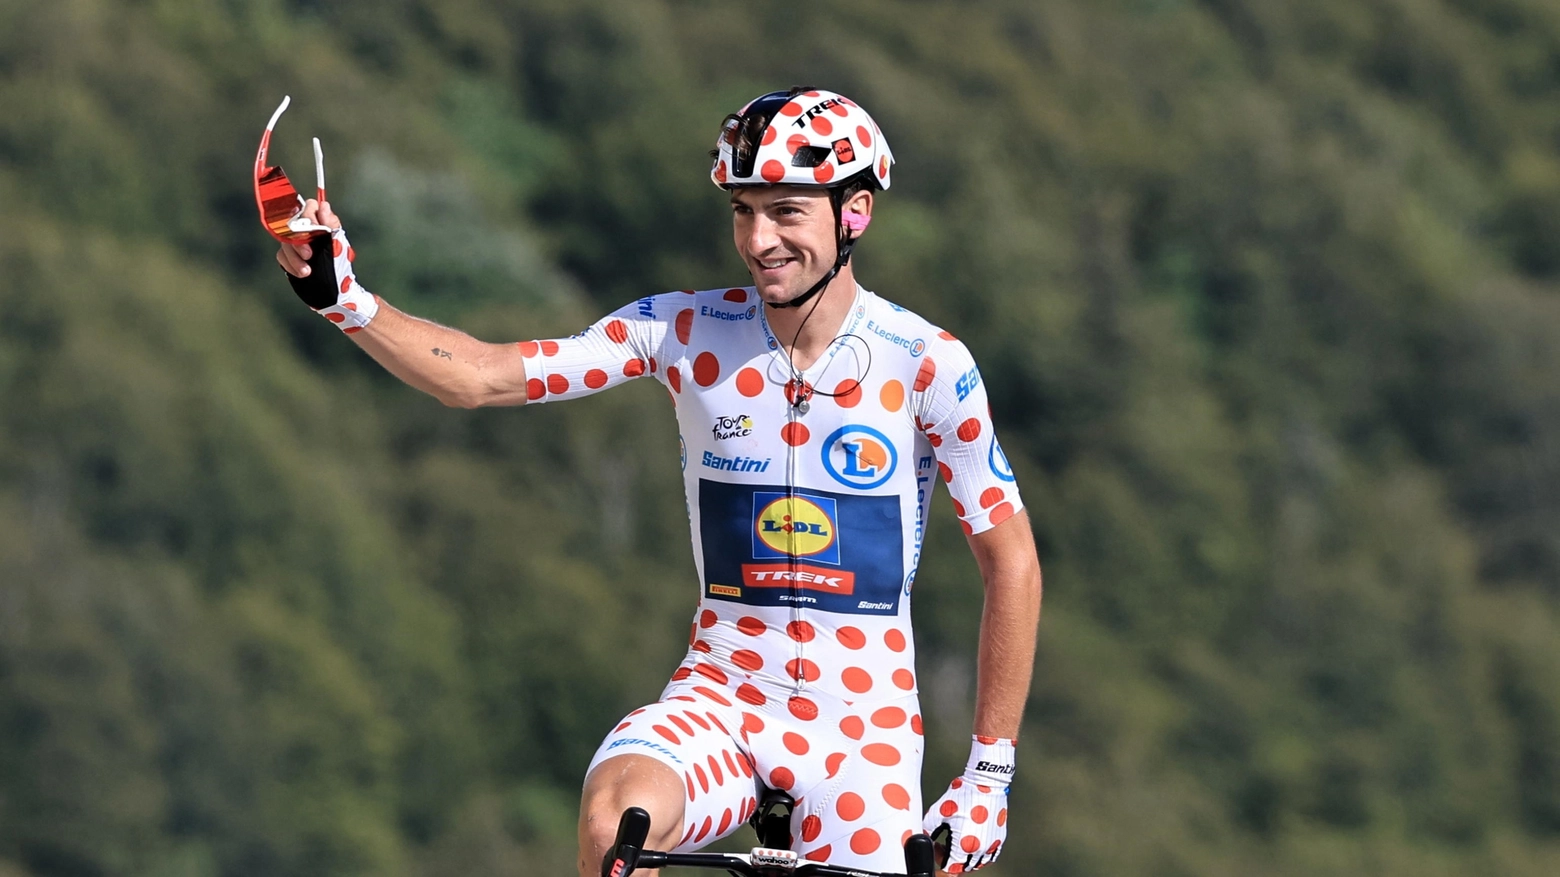 L'abruzzese rinato dopo la maglia a pois al Tour de France 2023: "So che esistono dei fuoriclasse come Pogacar, ma io mi sento uno dei migliori tra i corridori normali"